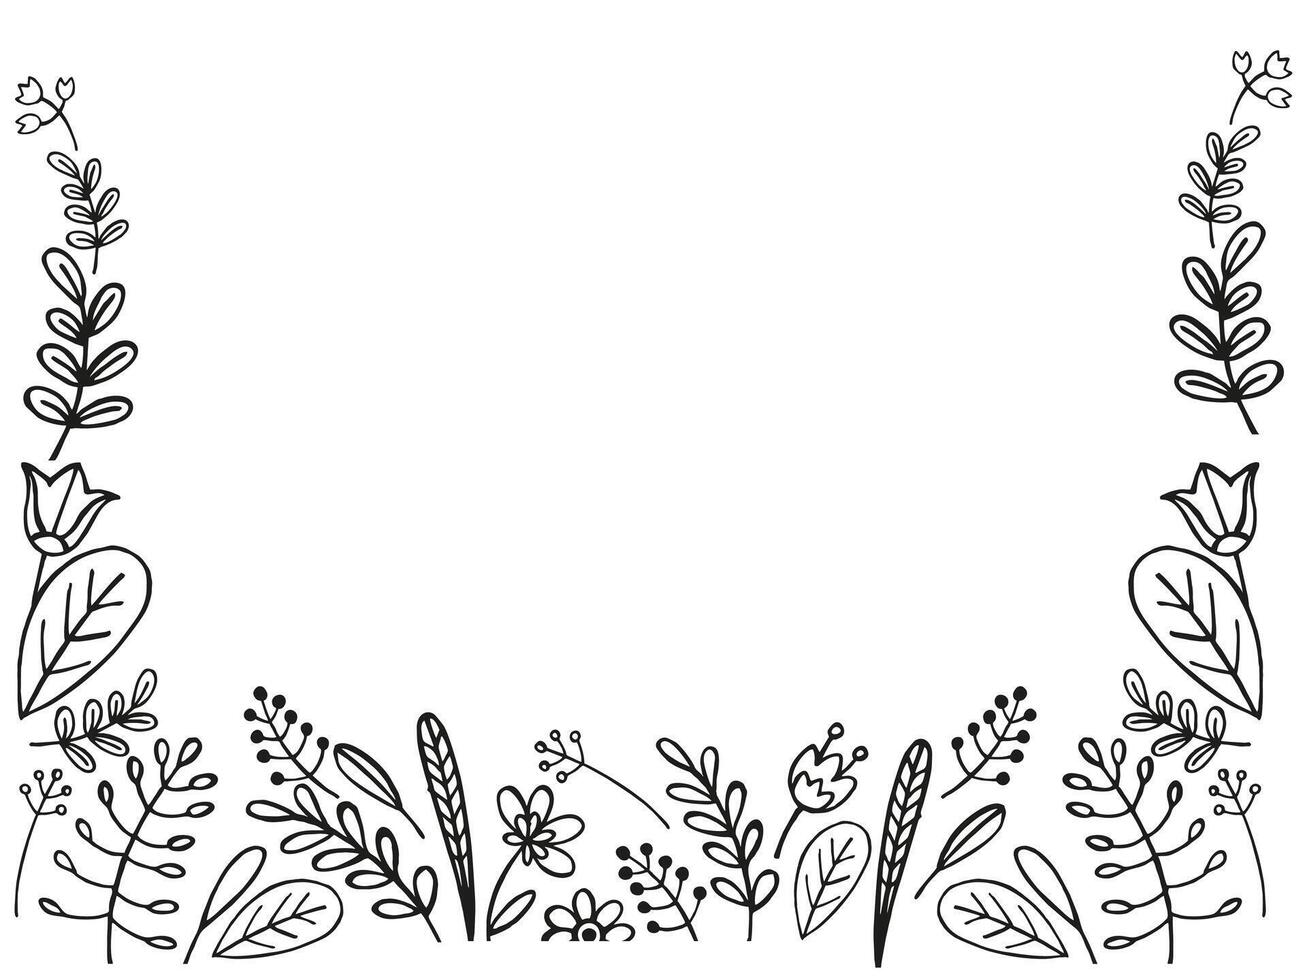 mão desenhado quadro, Armação a partir de vetor plantas, Escovar do flores, esboço do folhas, flores, botões, ervas, grama, coberto silhueta do folhas, monocromático ilustração isolado em branco fundo